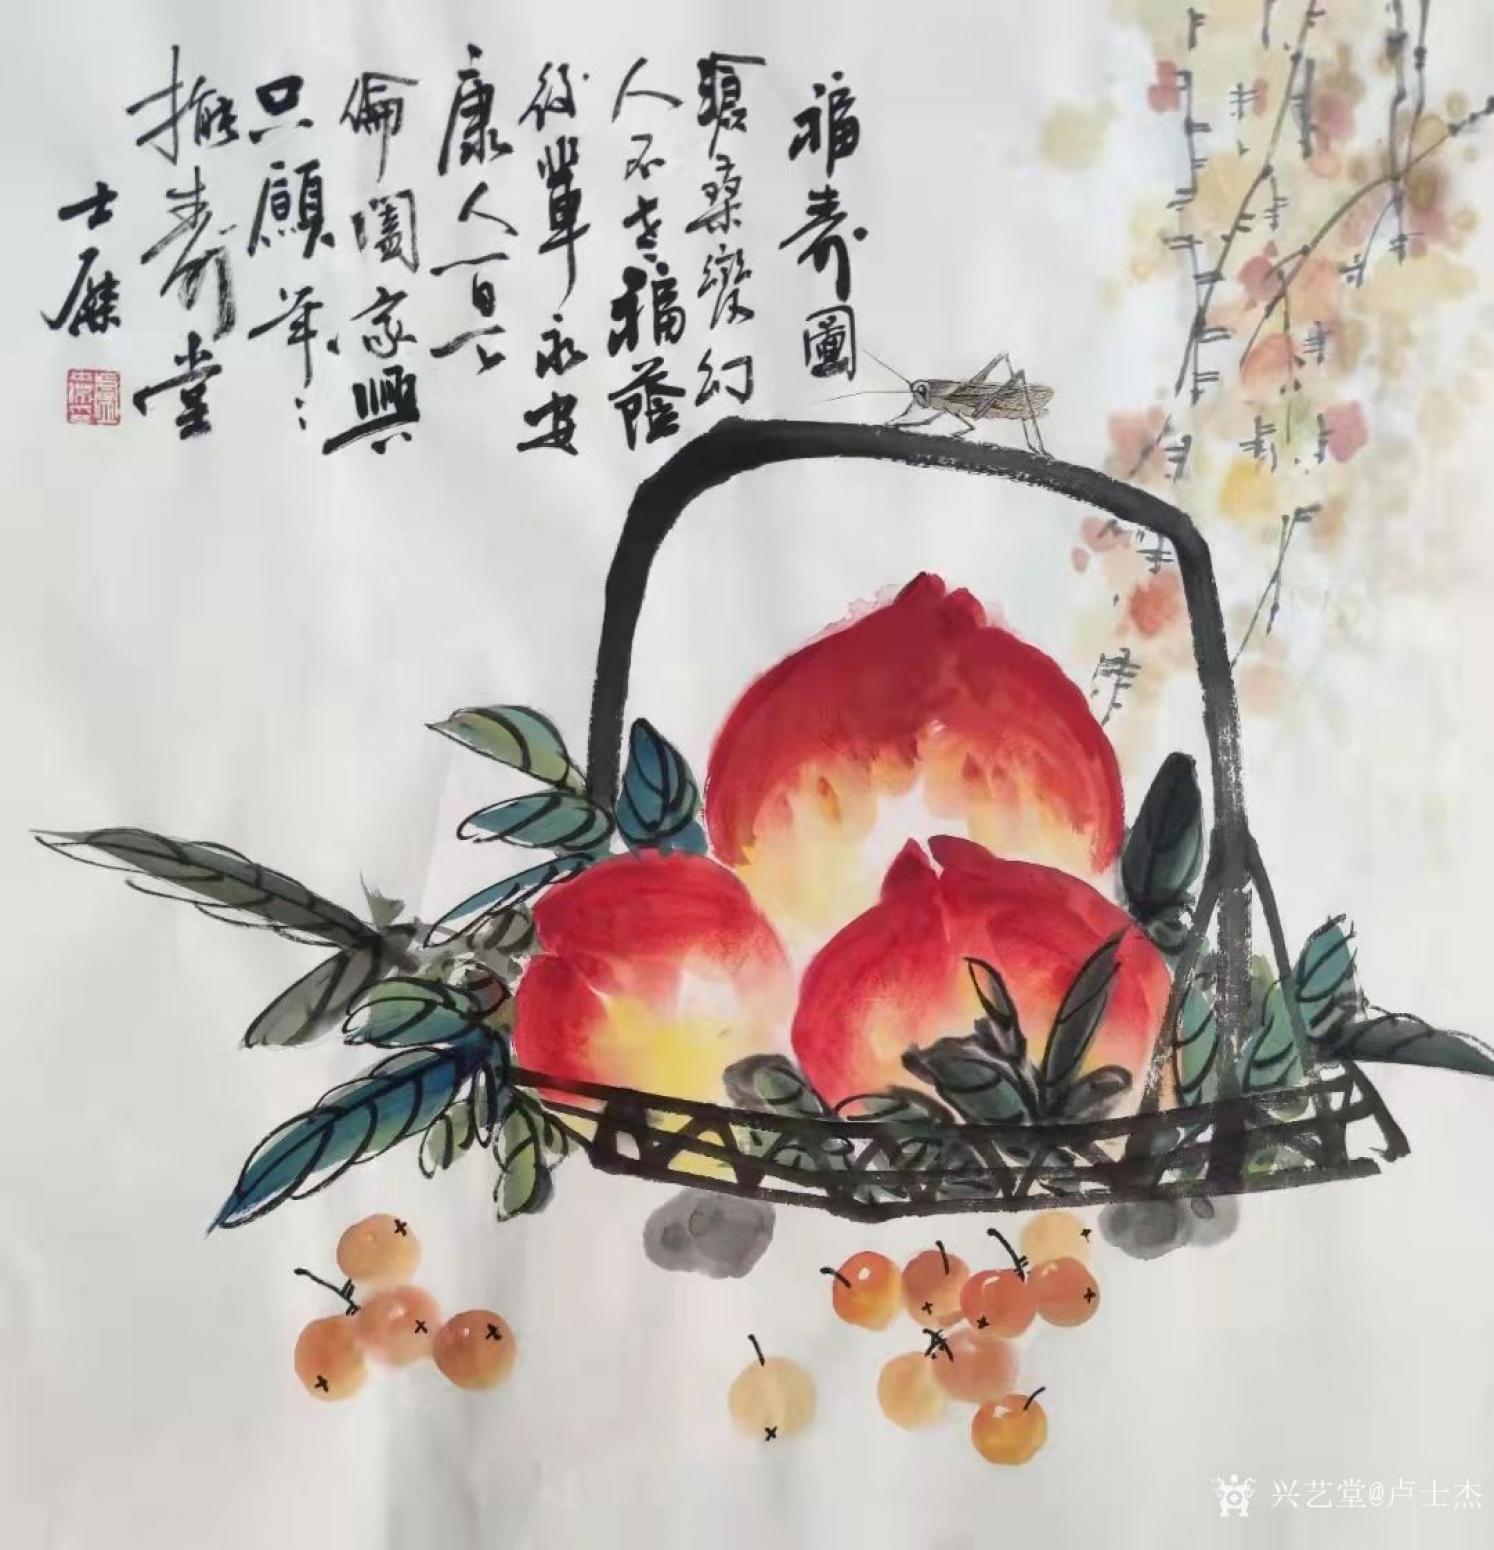 卢士杰国画作品《寿桃-福寿图》